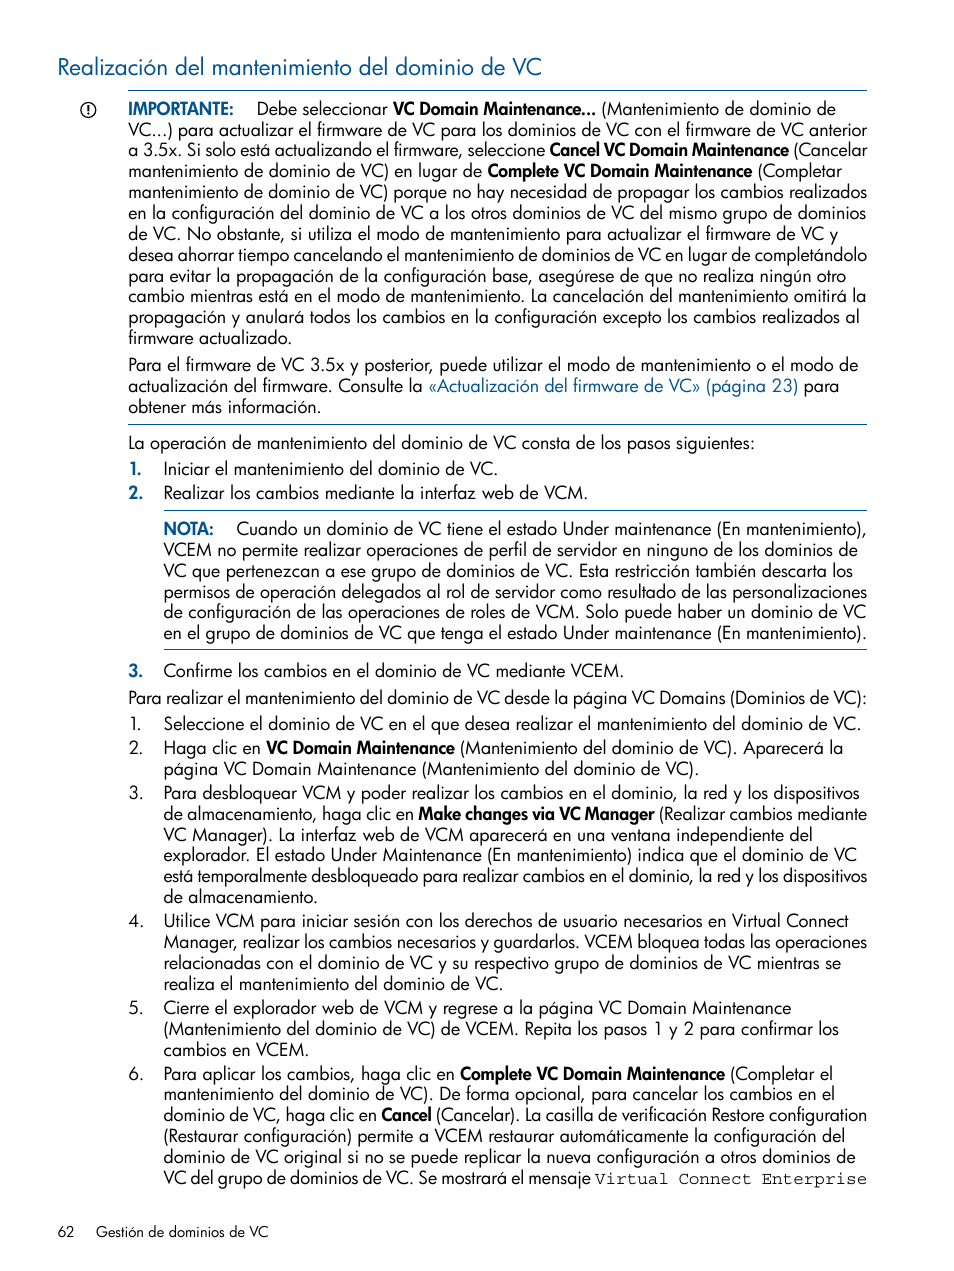 Realización del mantenimiento del dominio de vc | HP Software HP Virtual Connect Enterprise Manager Manual del usuario | Página 62 / 207